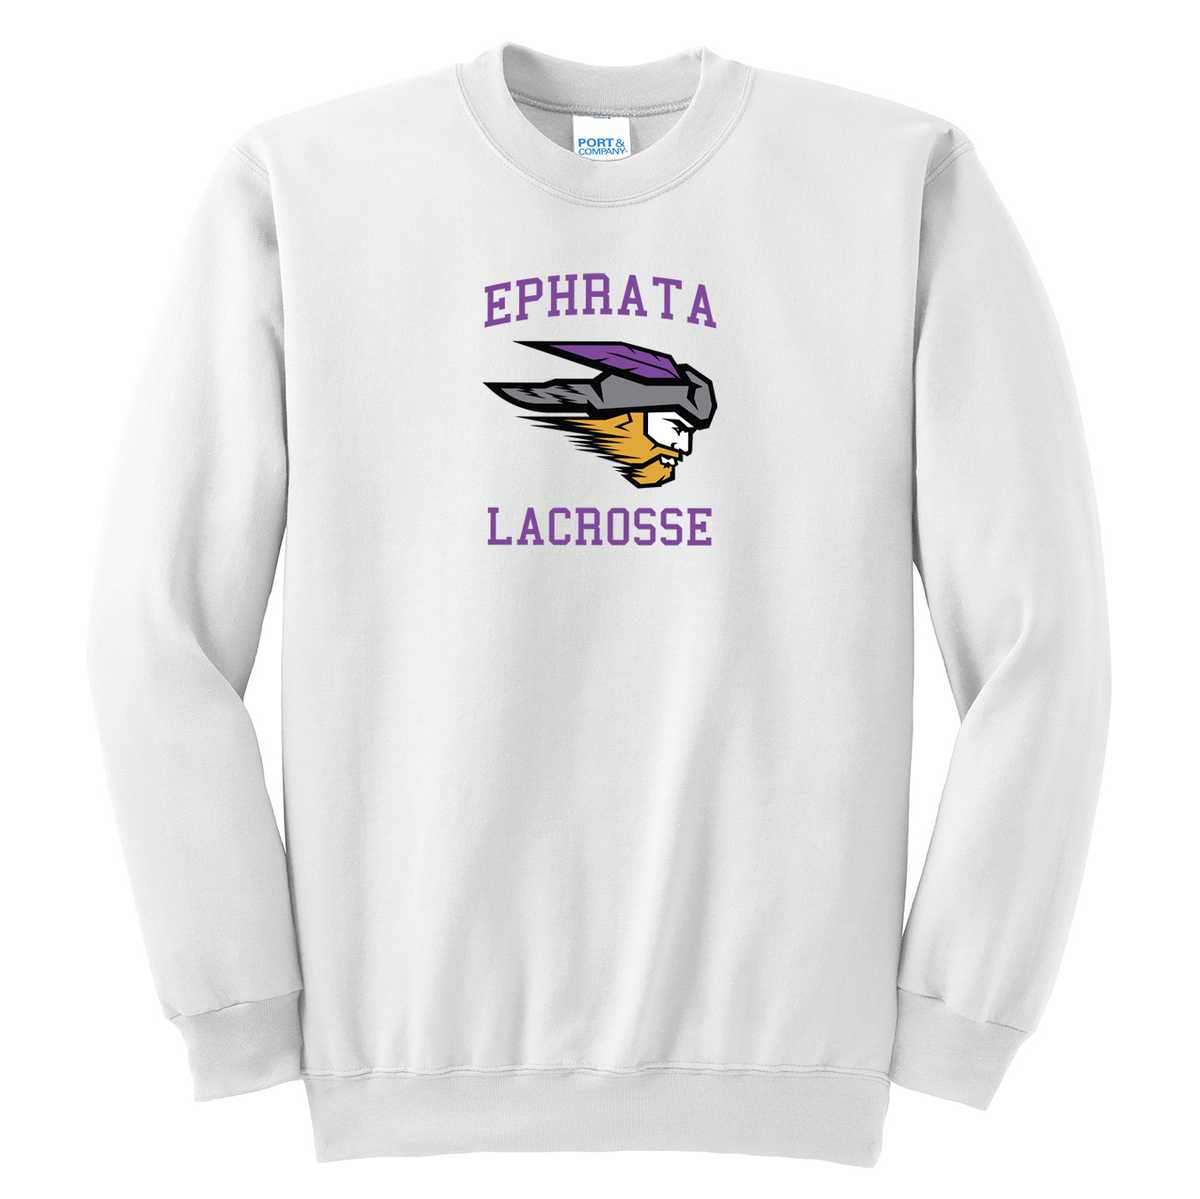 Ephrata Lacrosse Crew Neck Sweater